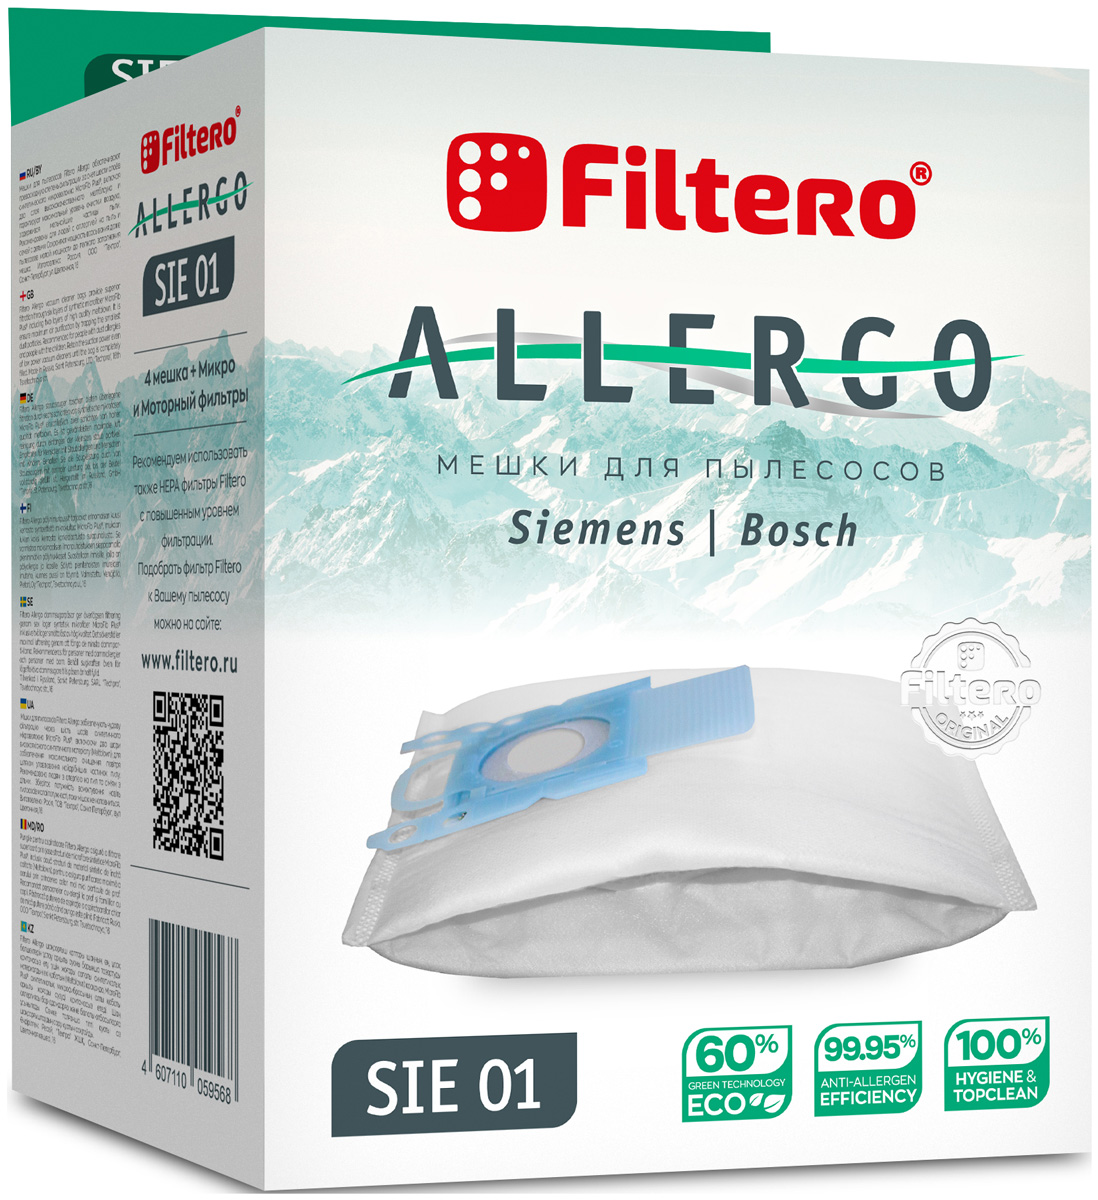 Пылесборники Filtero SIE 01 Allergo 4 шт. + моторный фильтр и микрофильтр цена и фото